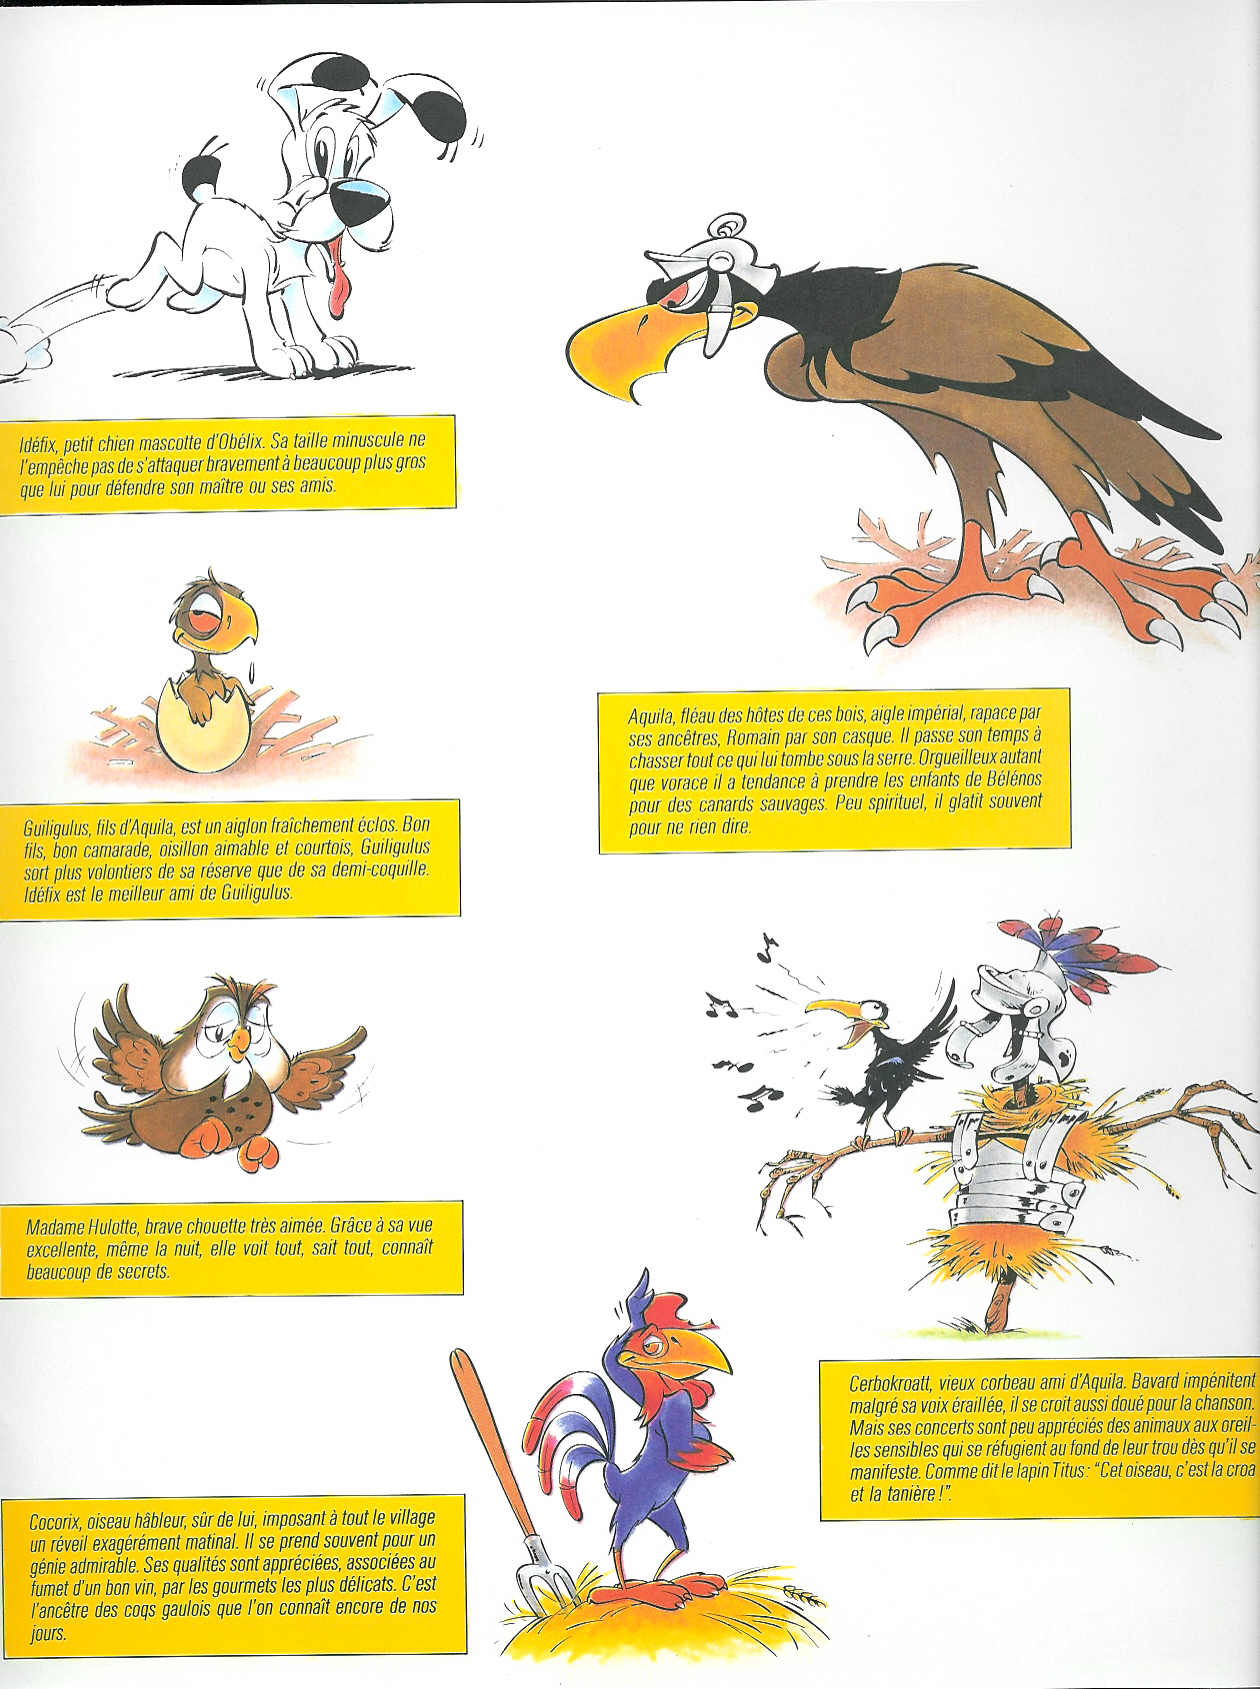 Seconde collection de livre pour enfants avec Idéfix (1983) les personnages